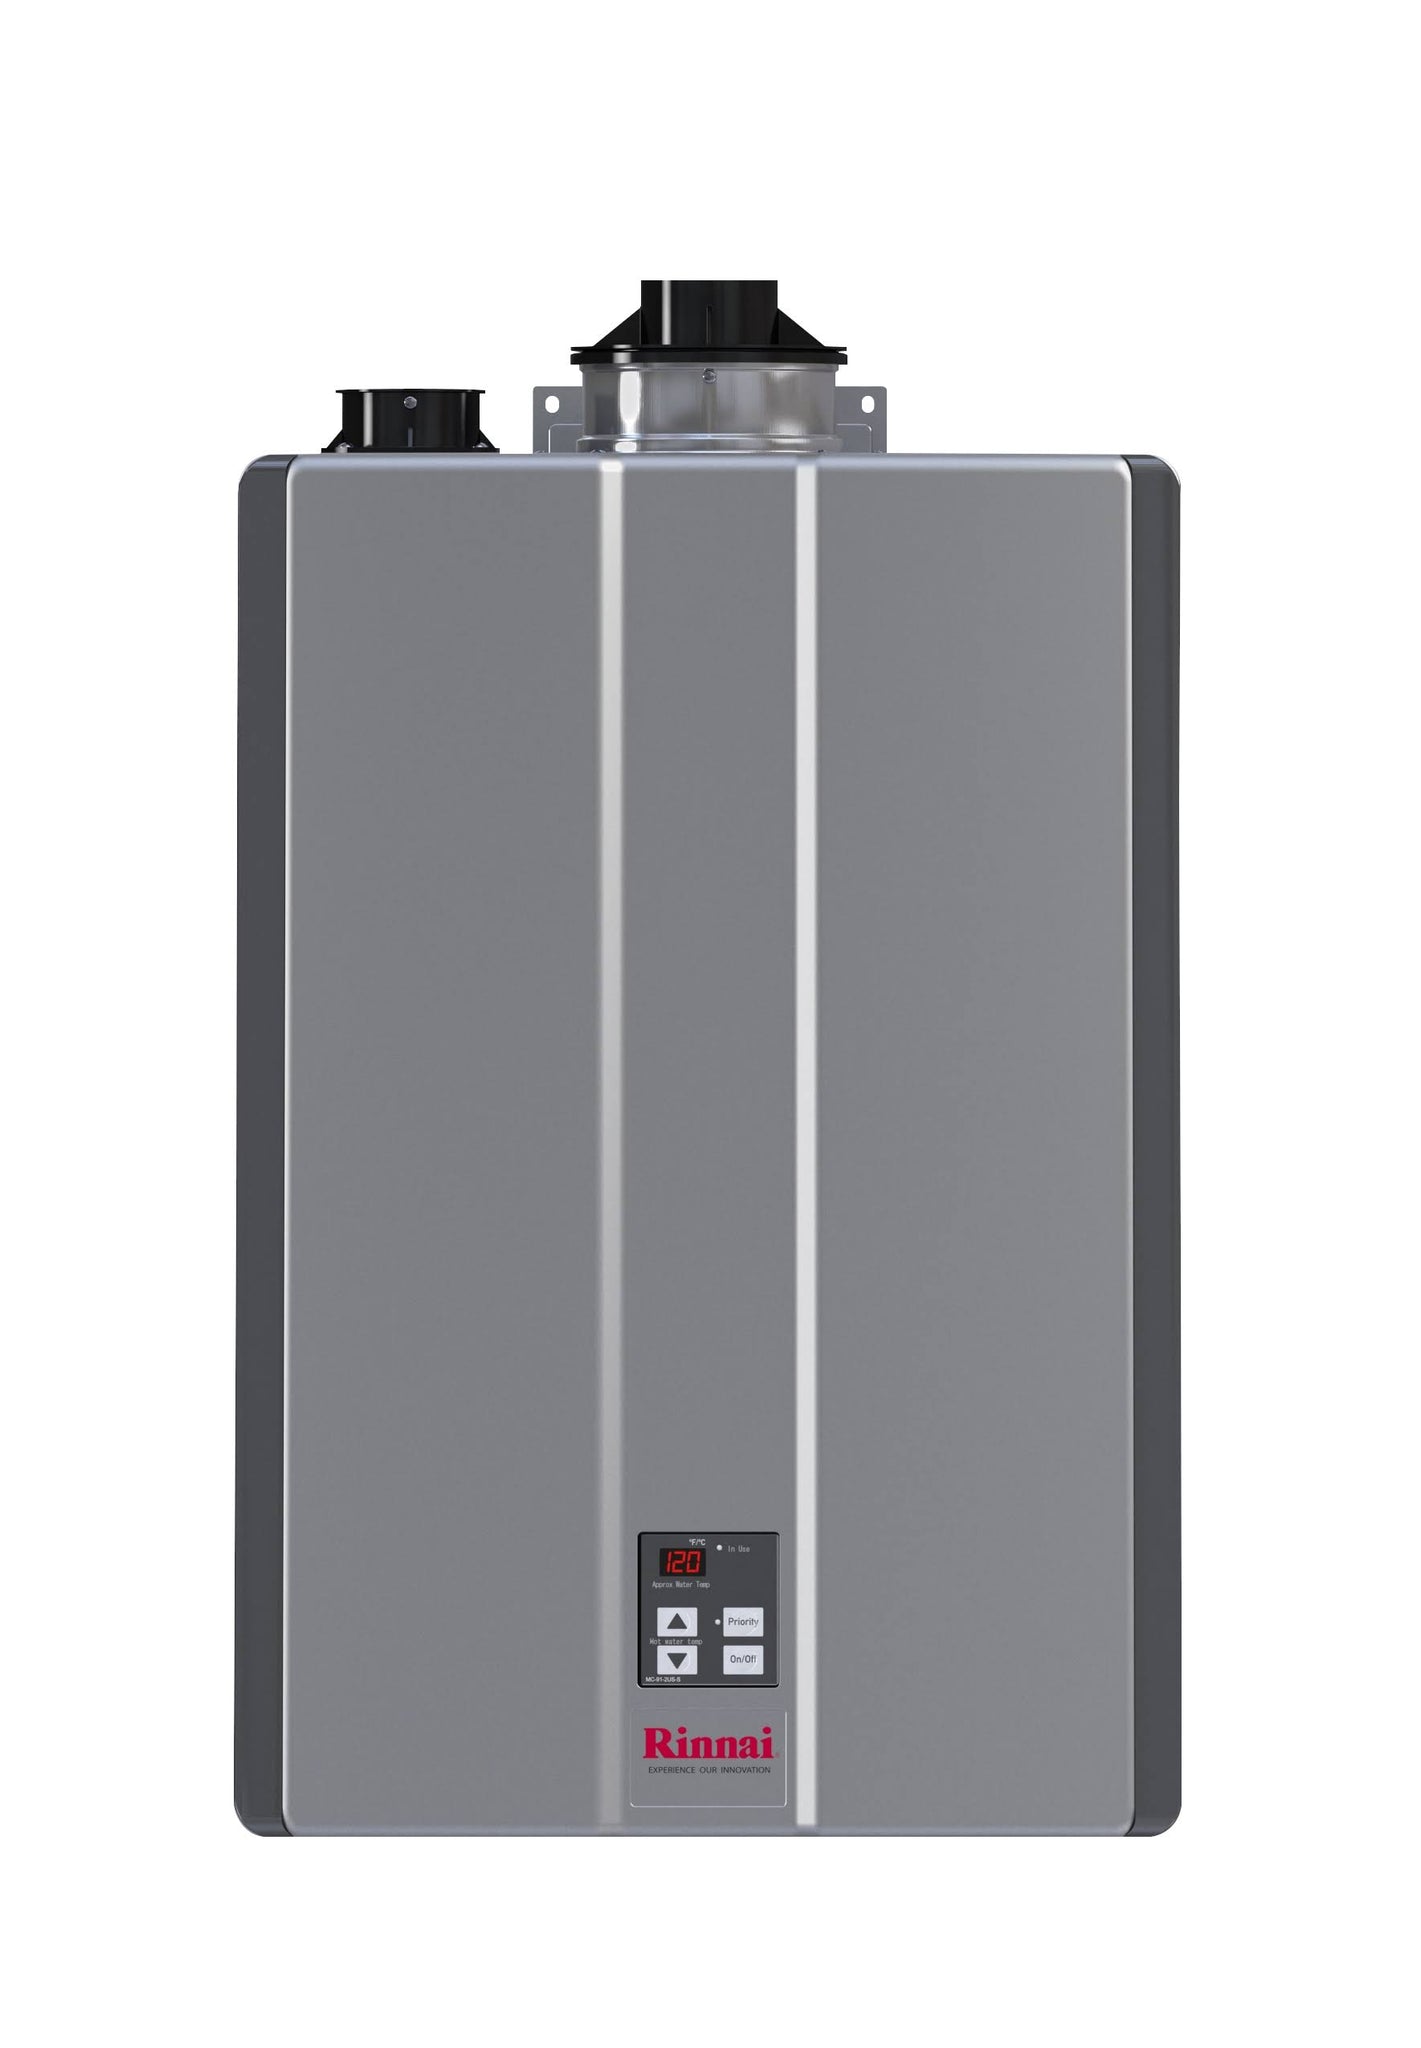 Rinnai RU199iN 199,000 BTU Indoor Natural GAS Tankless Water Heater